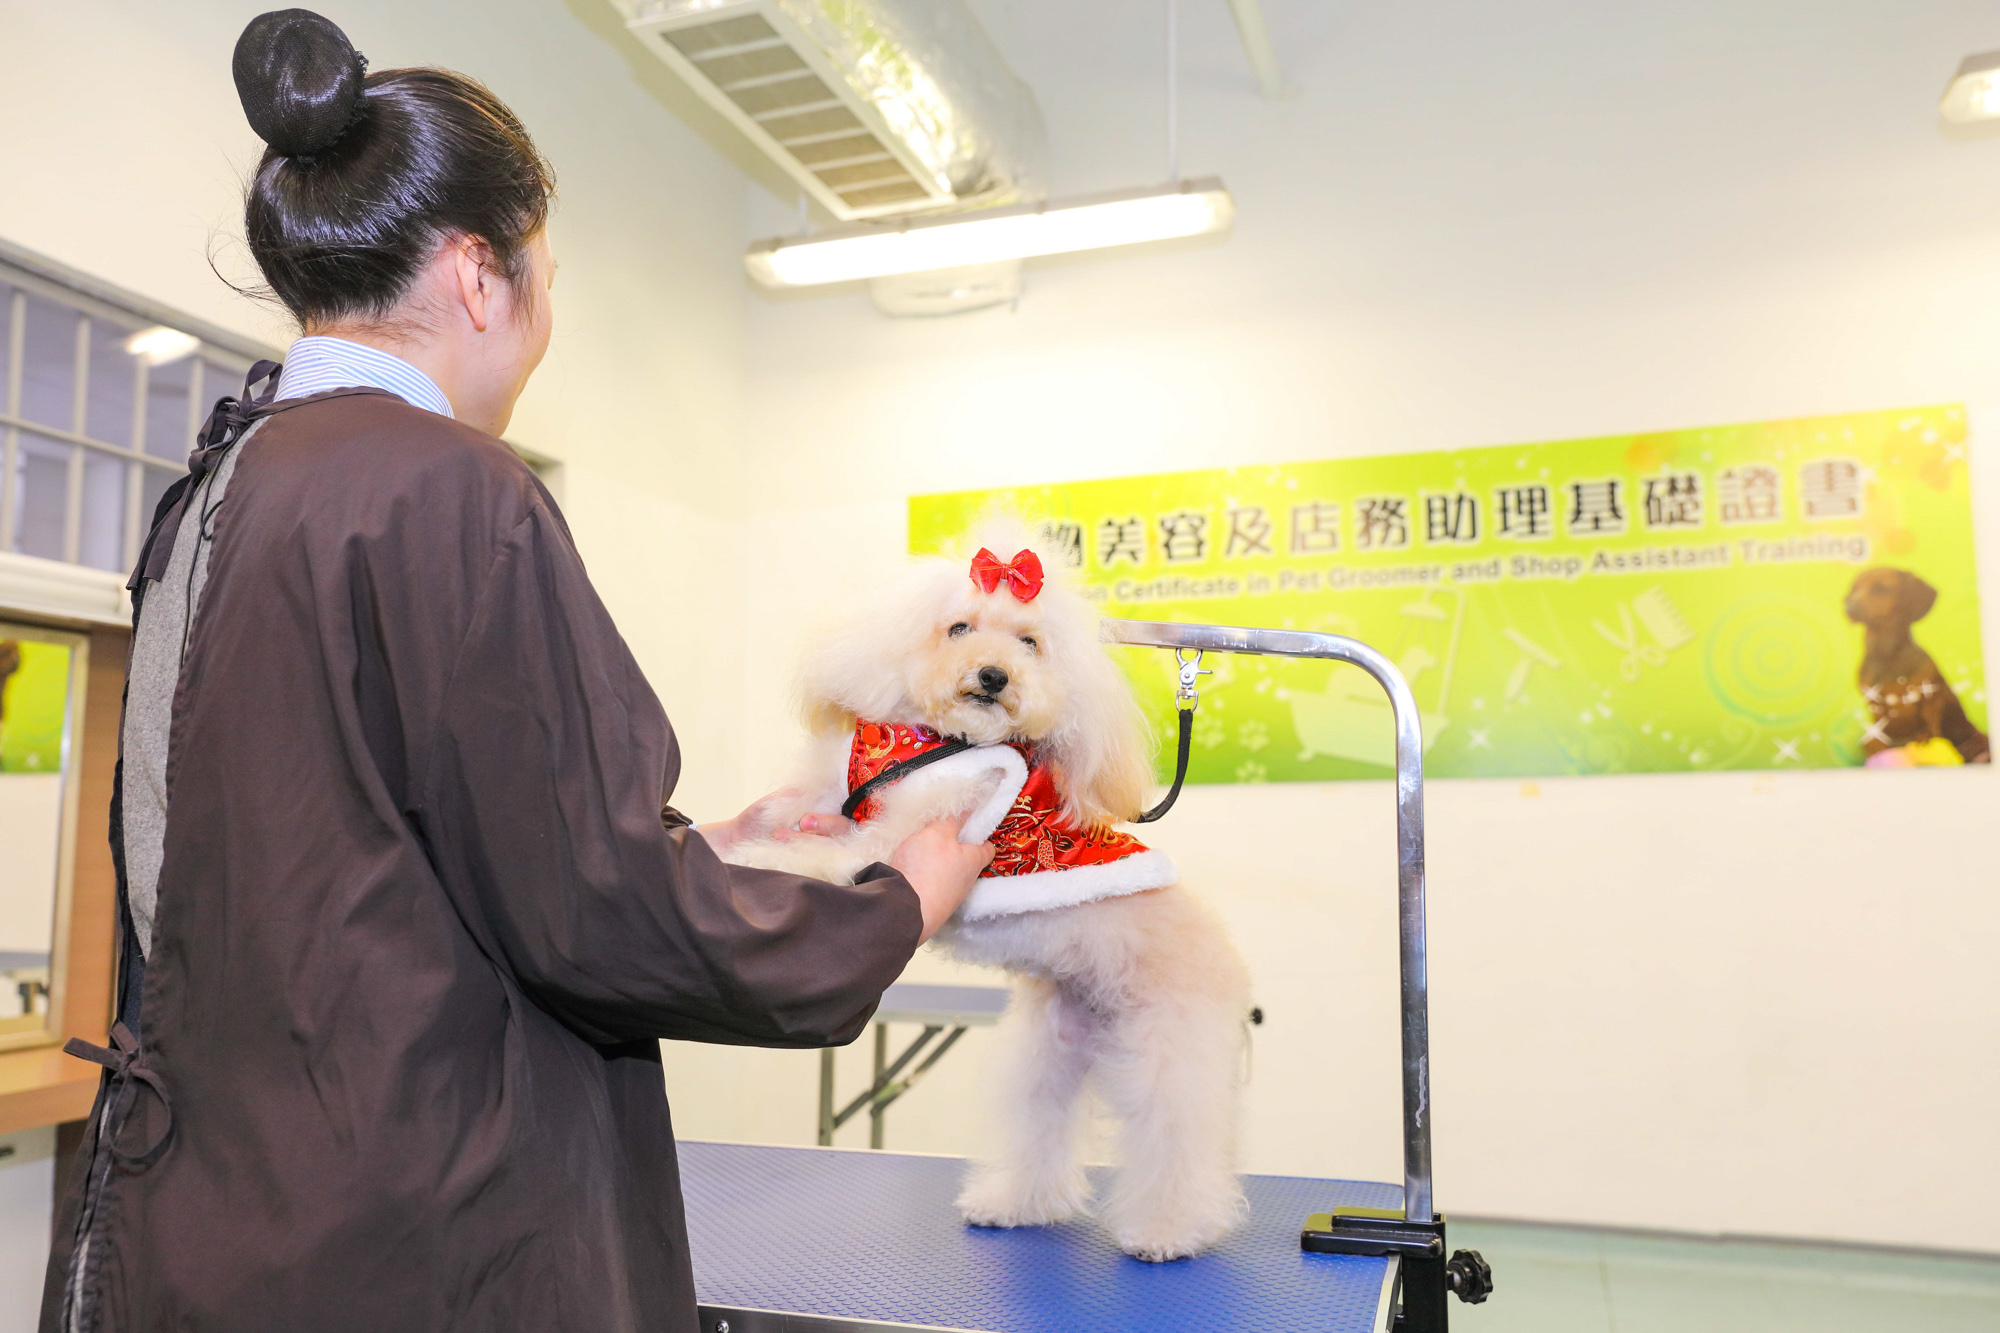 宠物美容及店务助理基础证书课程有助提高在囚人士的就业能力。